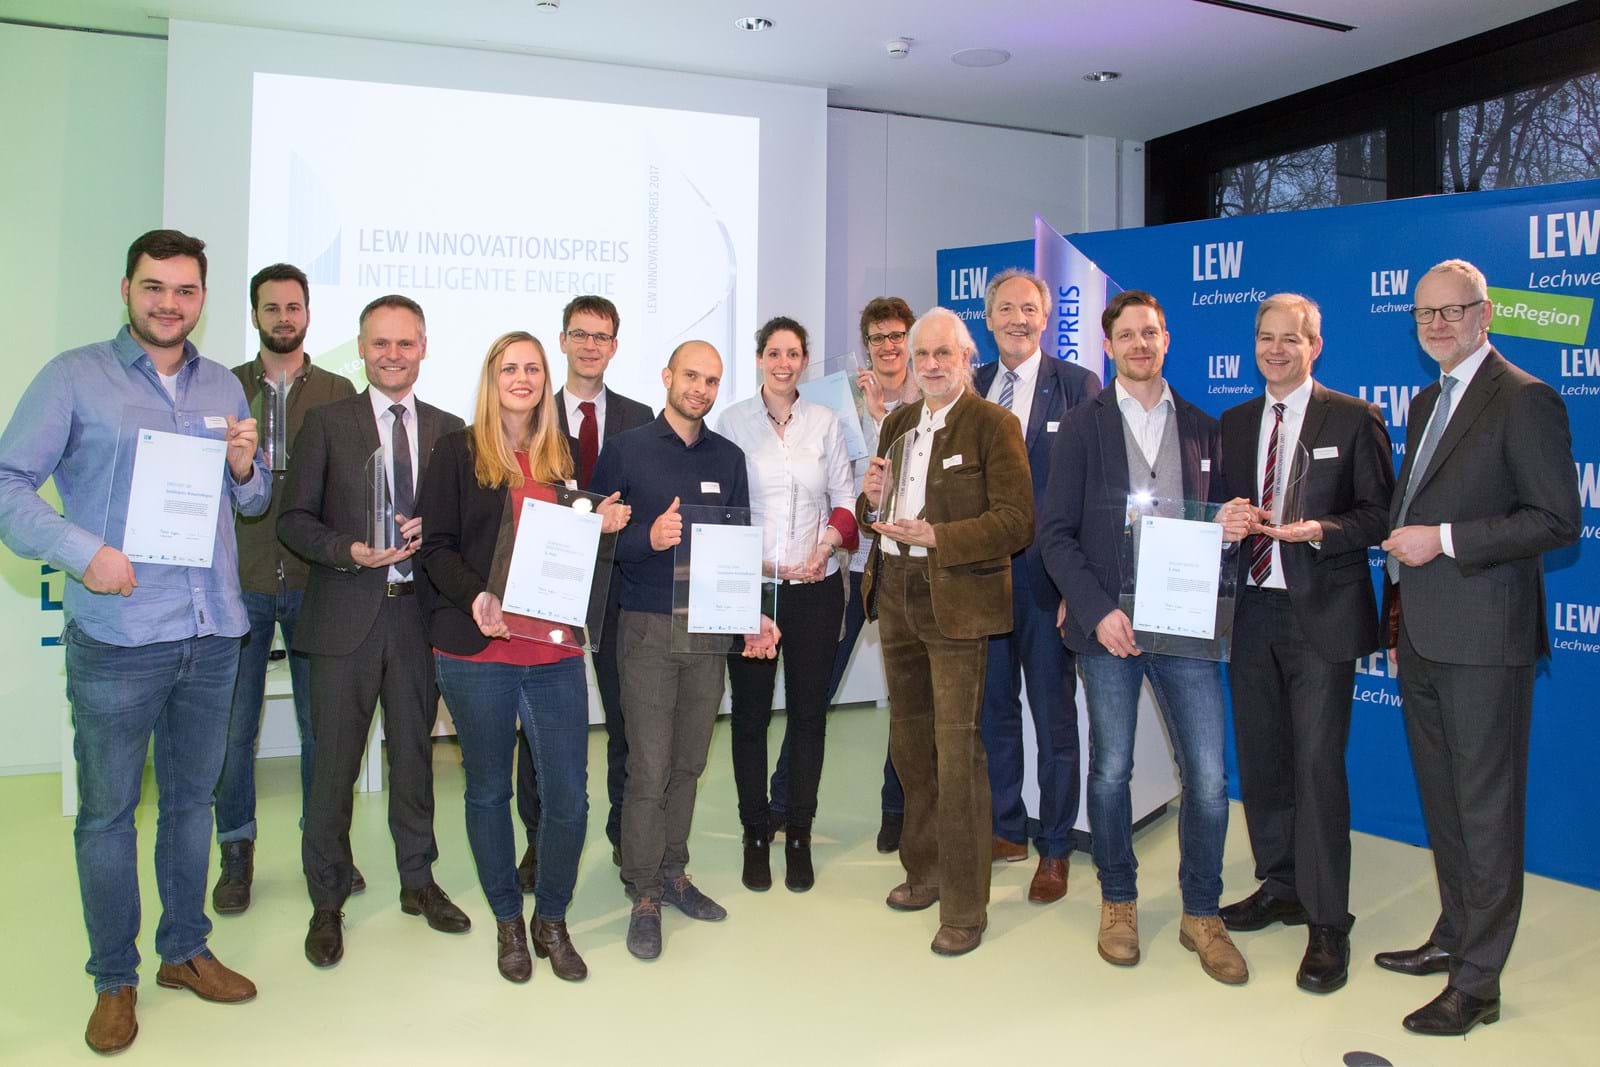 LEW-Vorstandsmitglied Dr. Markus Litpher (r.) überreichte in der LEW Energiewelt den LEW Innovationspreis intelligente Energie an die Vertreter der Gewinnerprojekte.